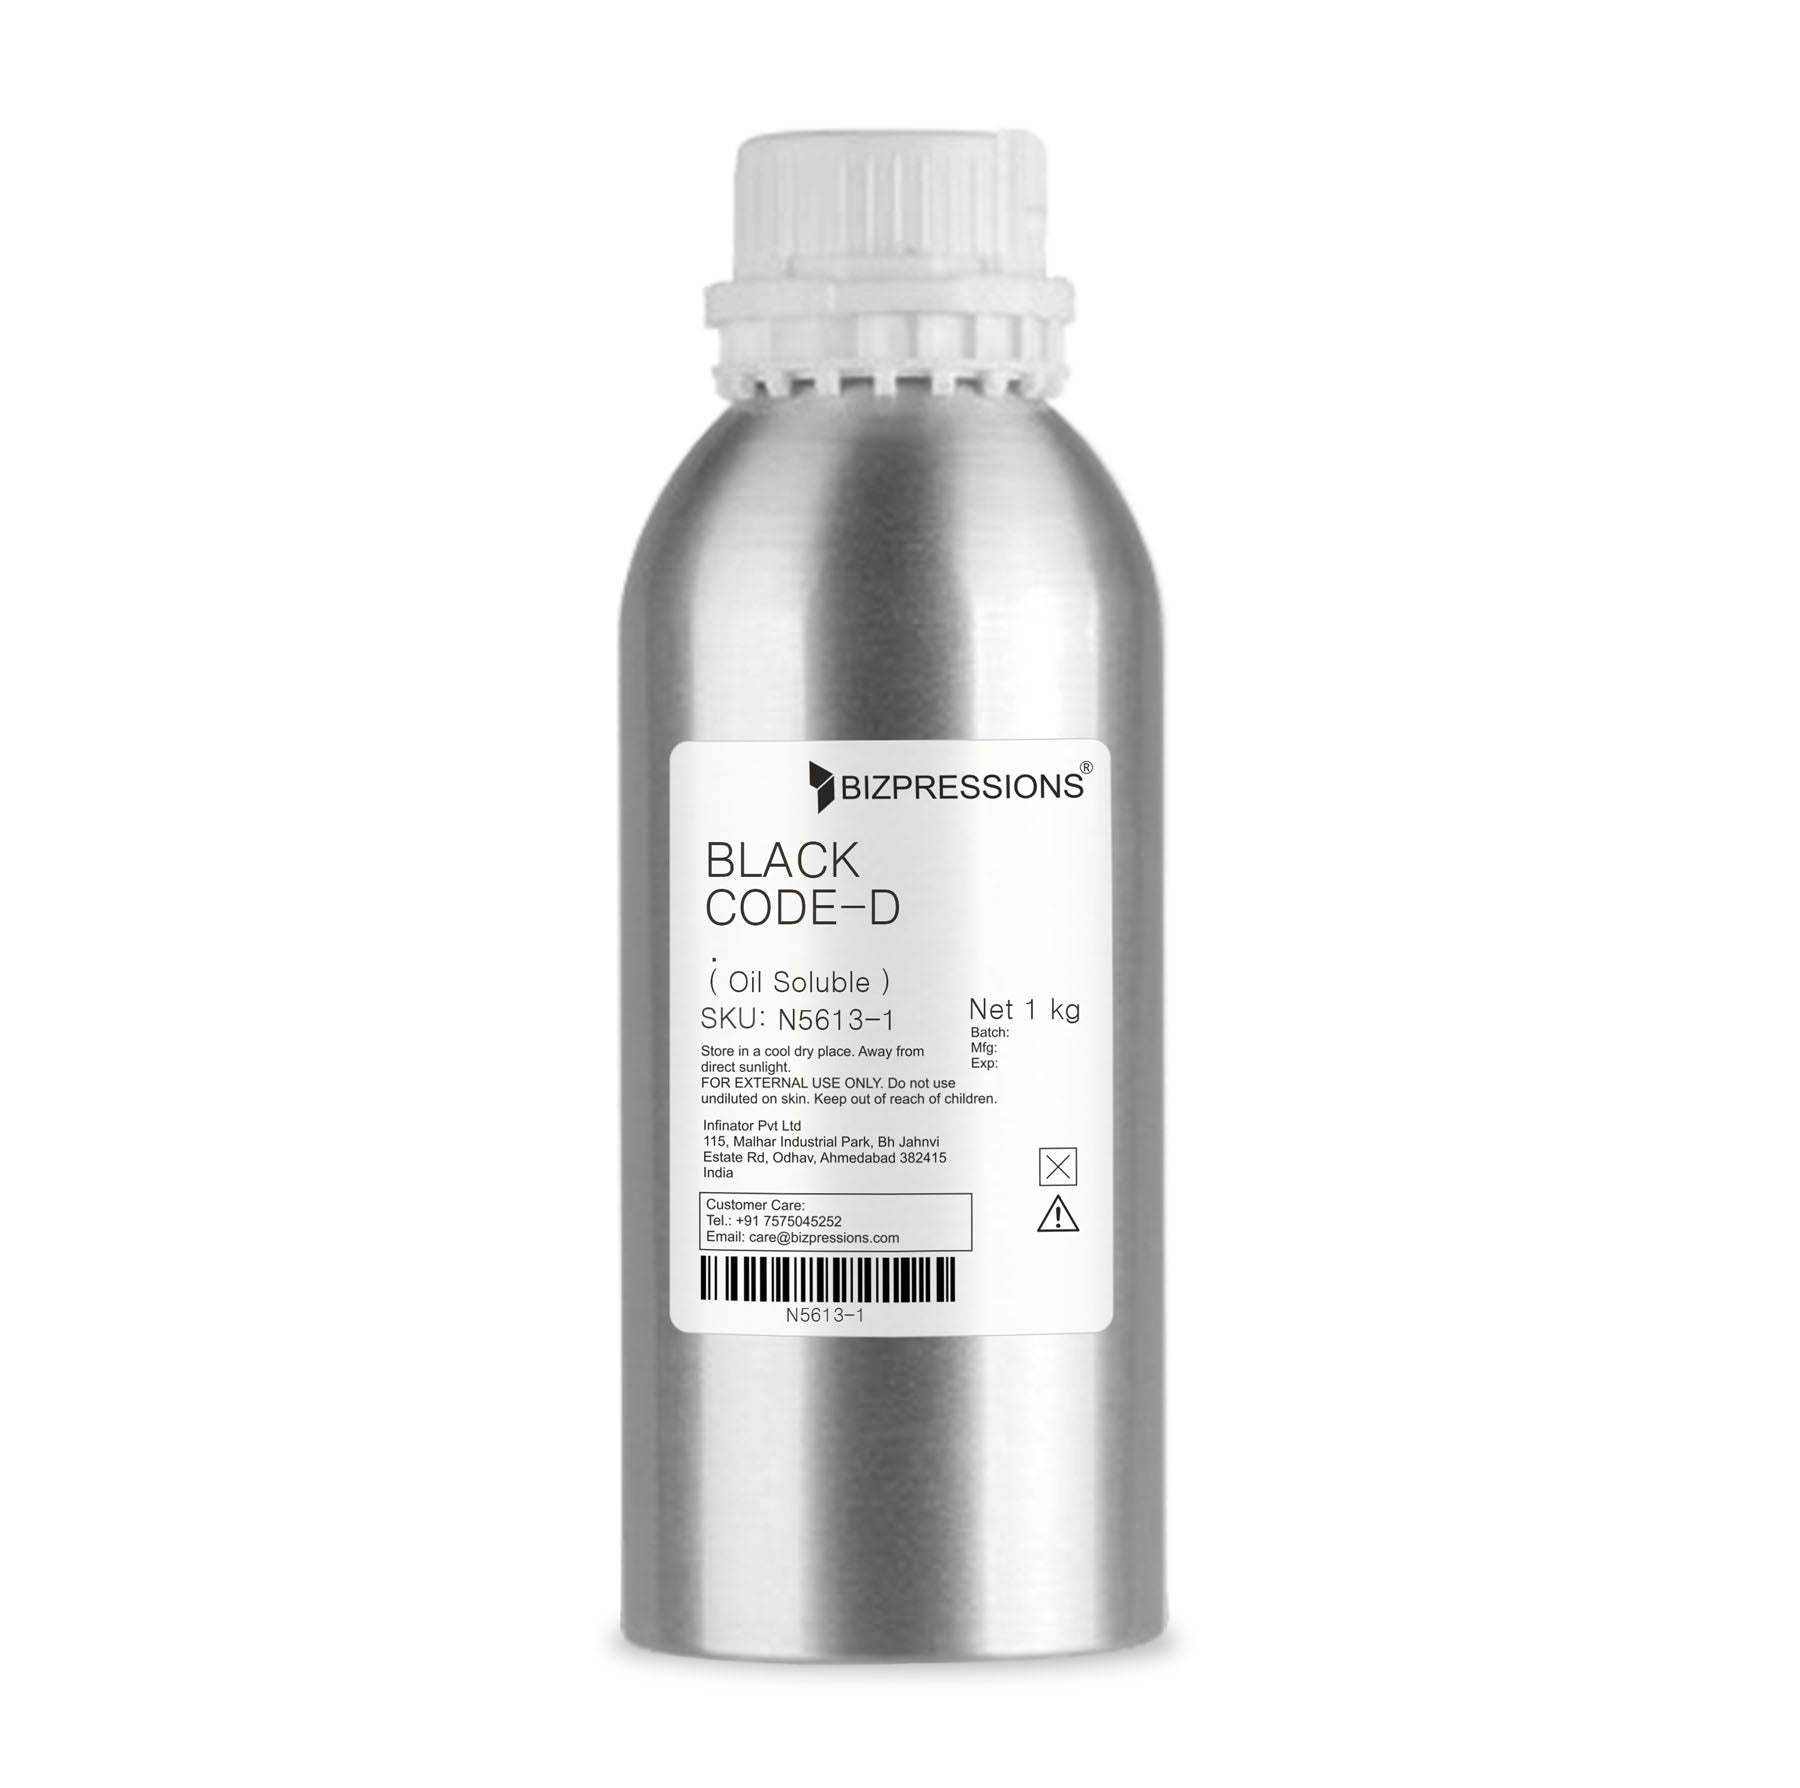 BLACK CODE-D - Fragrance ( Oil Soluble ) - 1 kg